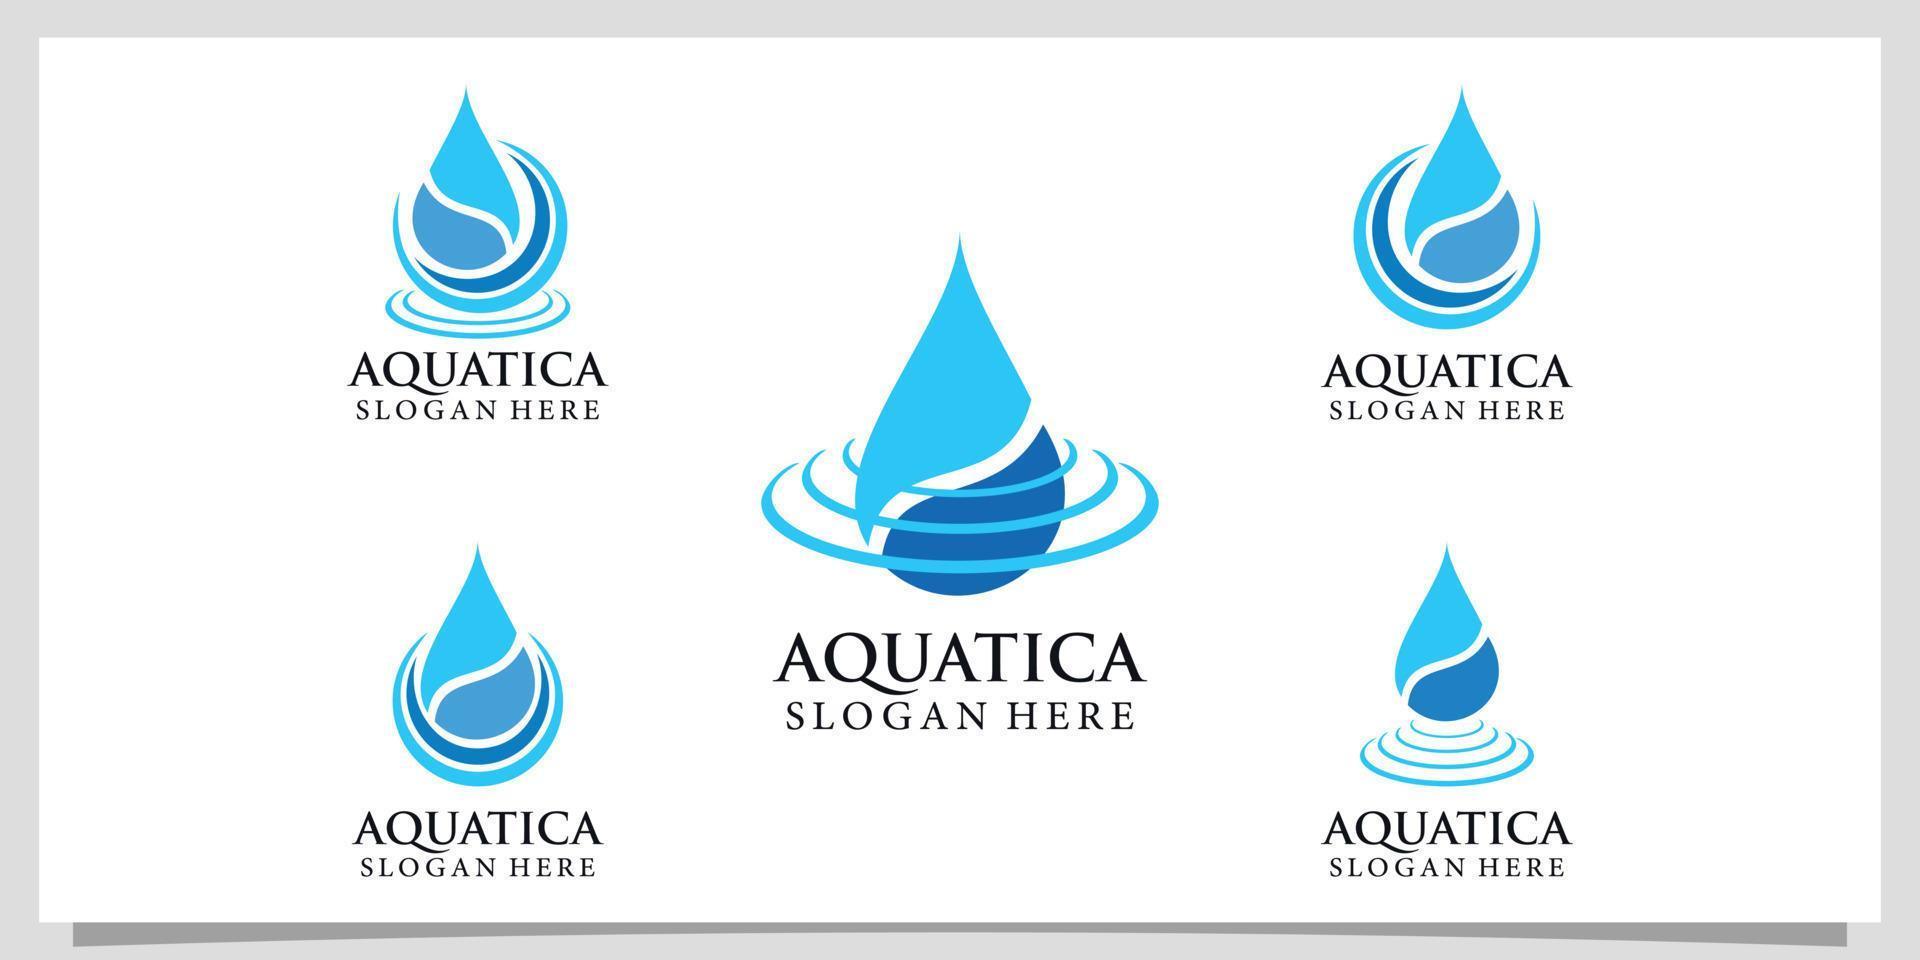 Sammlung Wasser-Logo-Design mit Splash-Effekt einfaches Konzept Premium-Vektor vektor